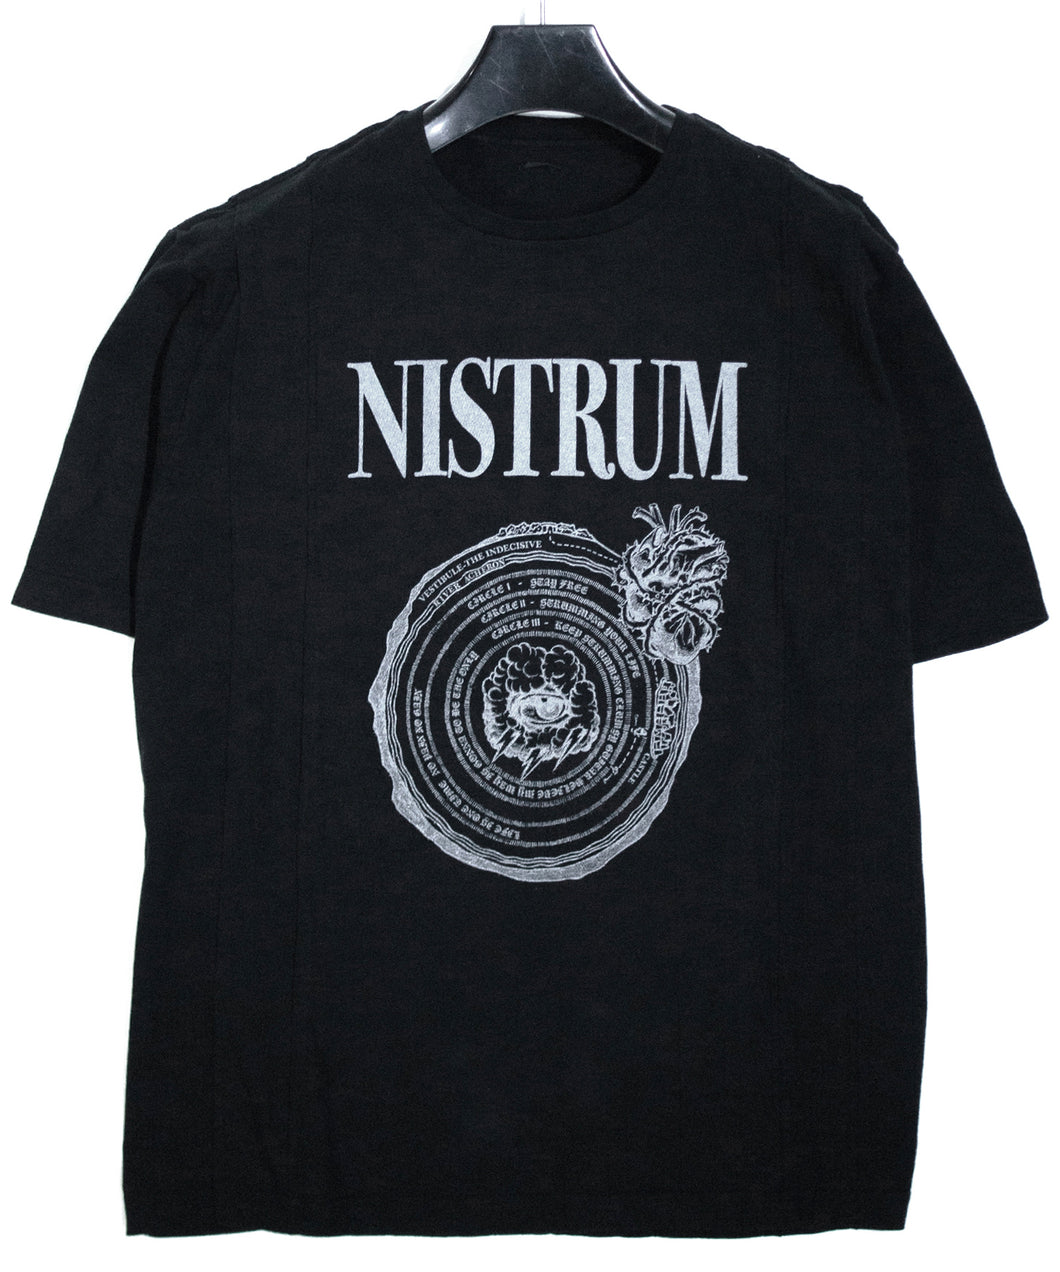 【直営店限定】30/- ナチュラルソフト天竺 NISTRUM ワイド Tシャツ - BLACK